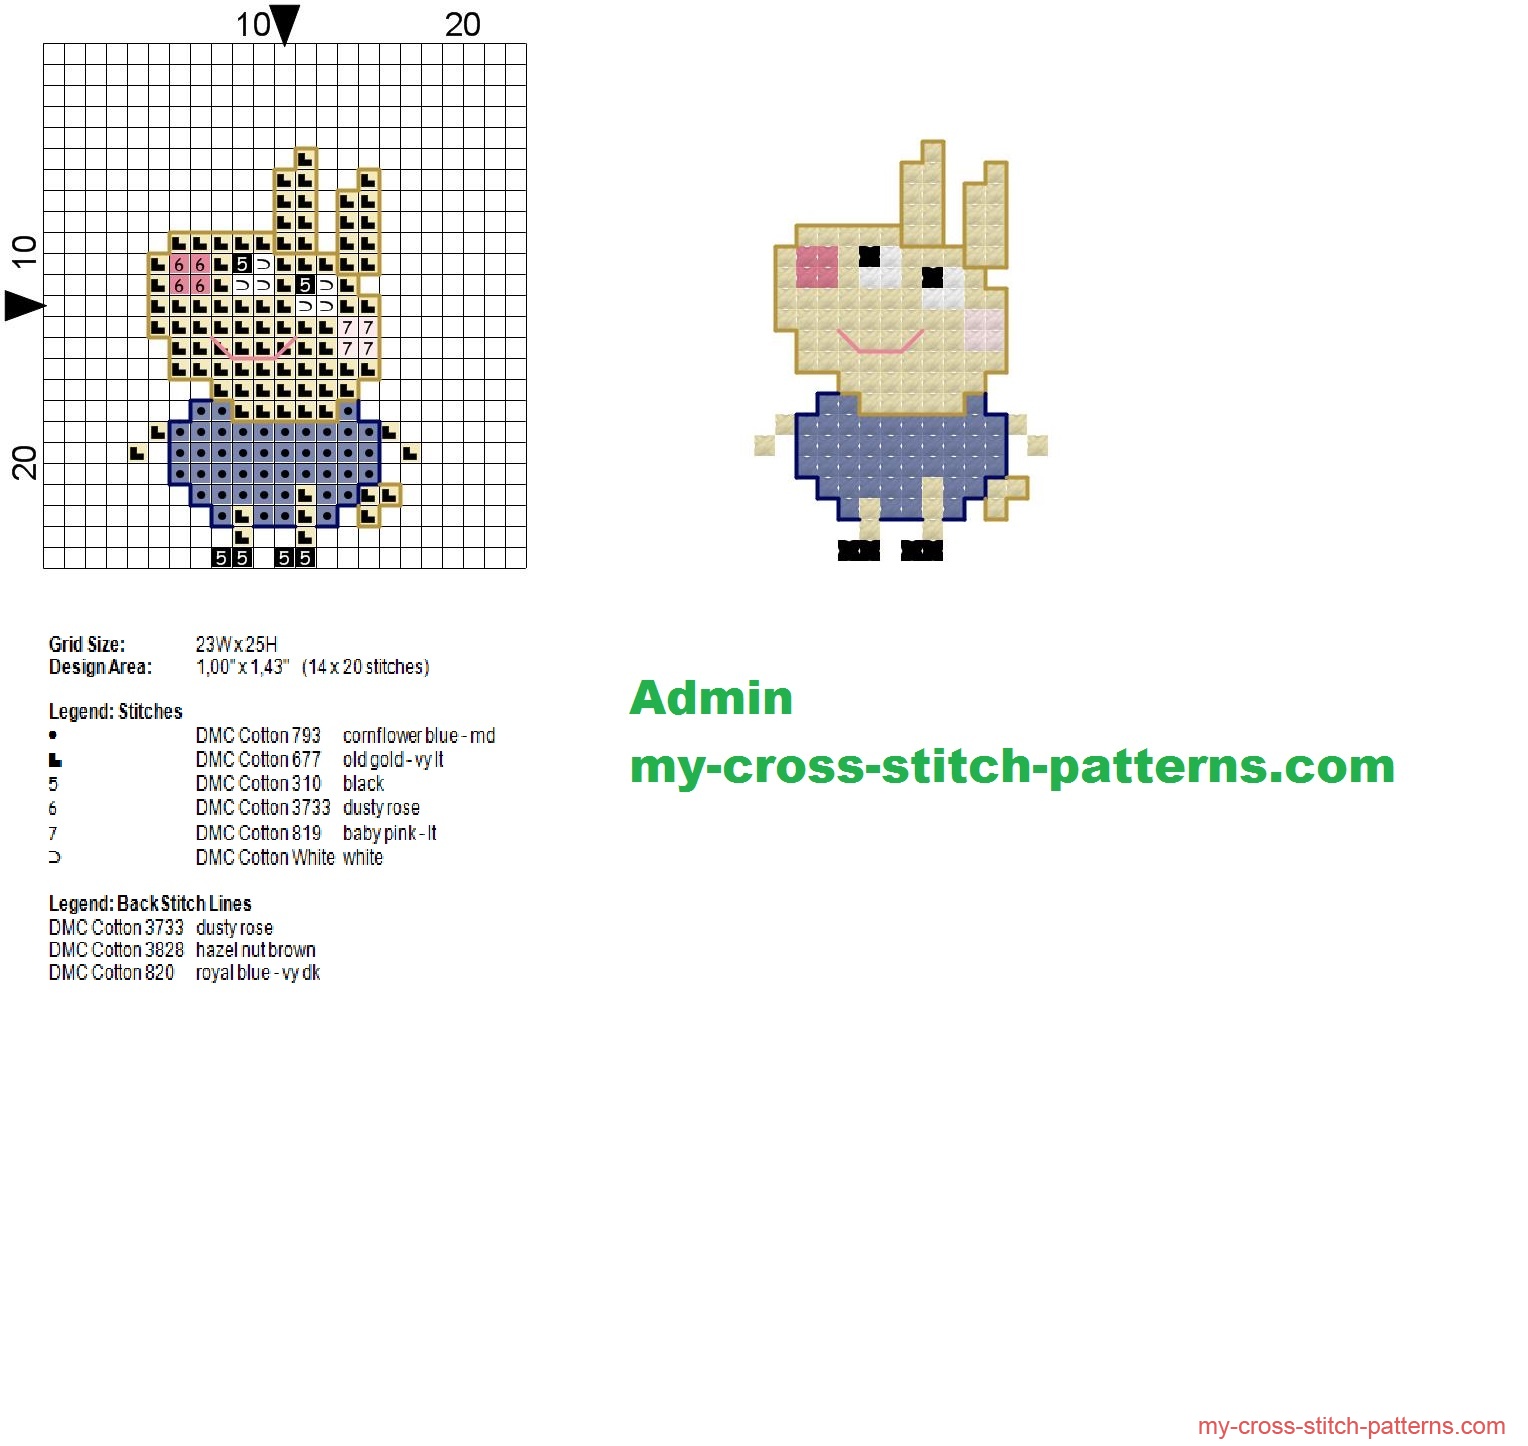 richard_rabbit_peppa_pig_character_cross_stitch_pattern_14x20